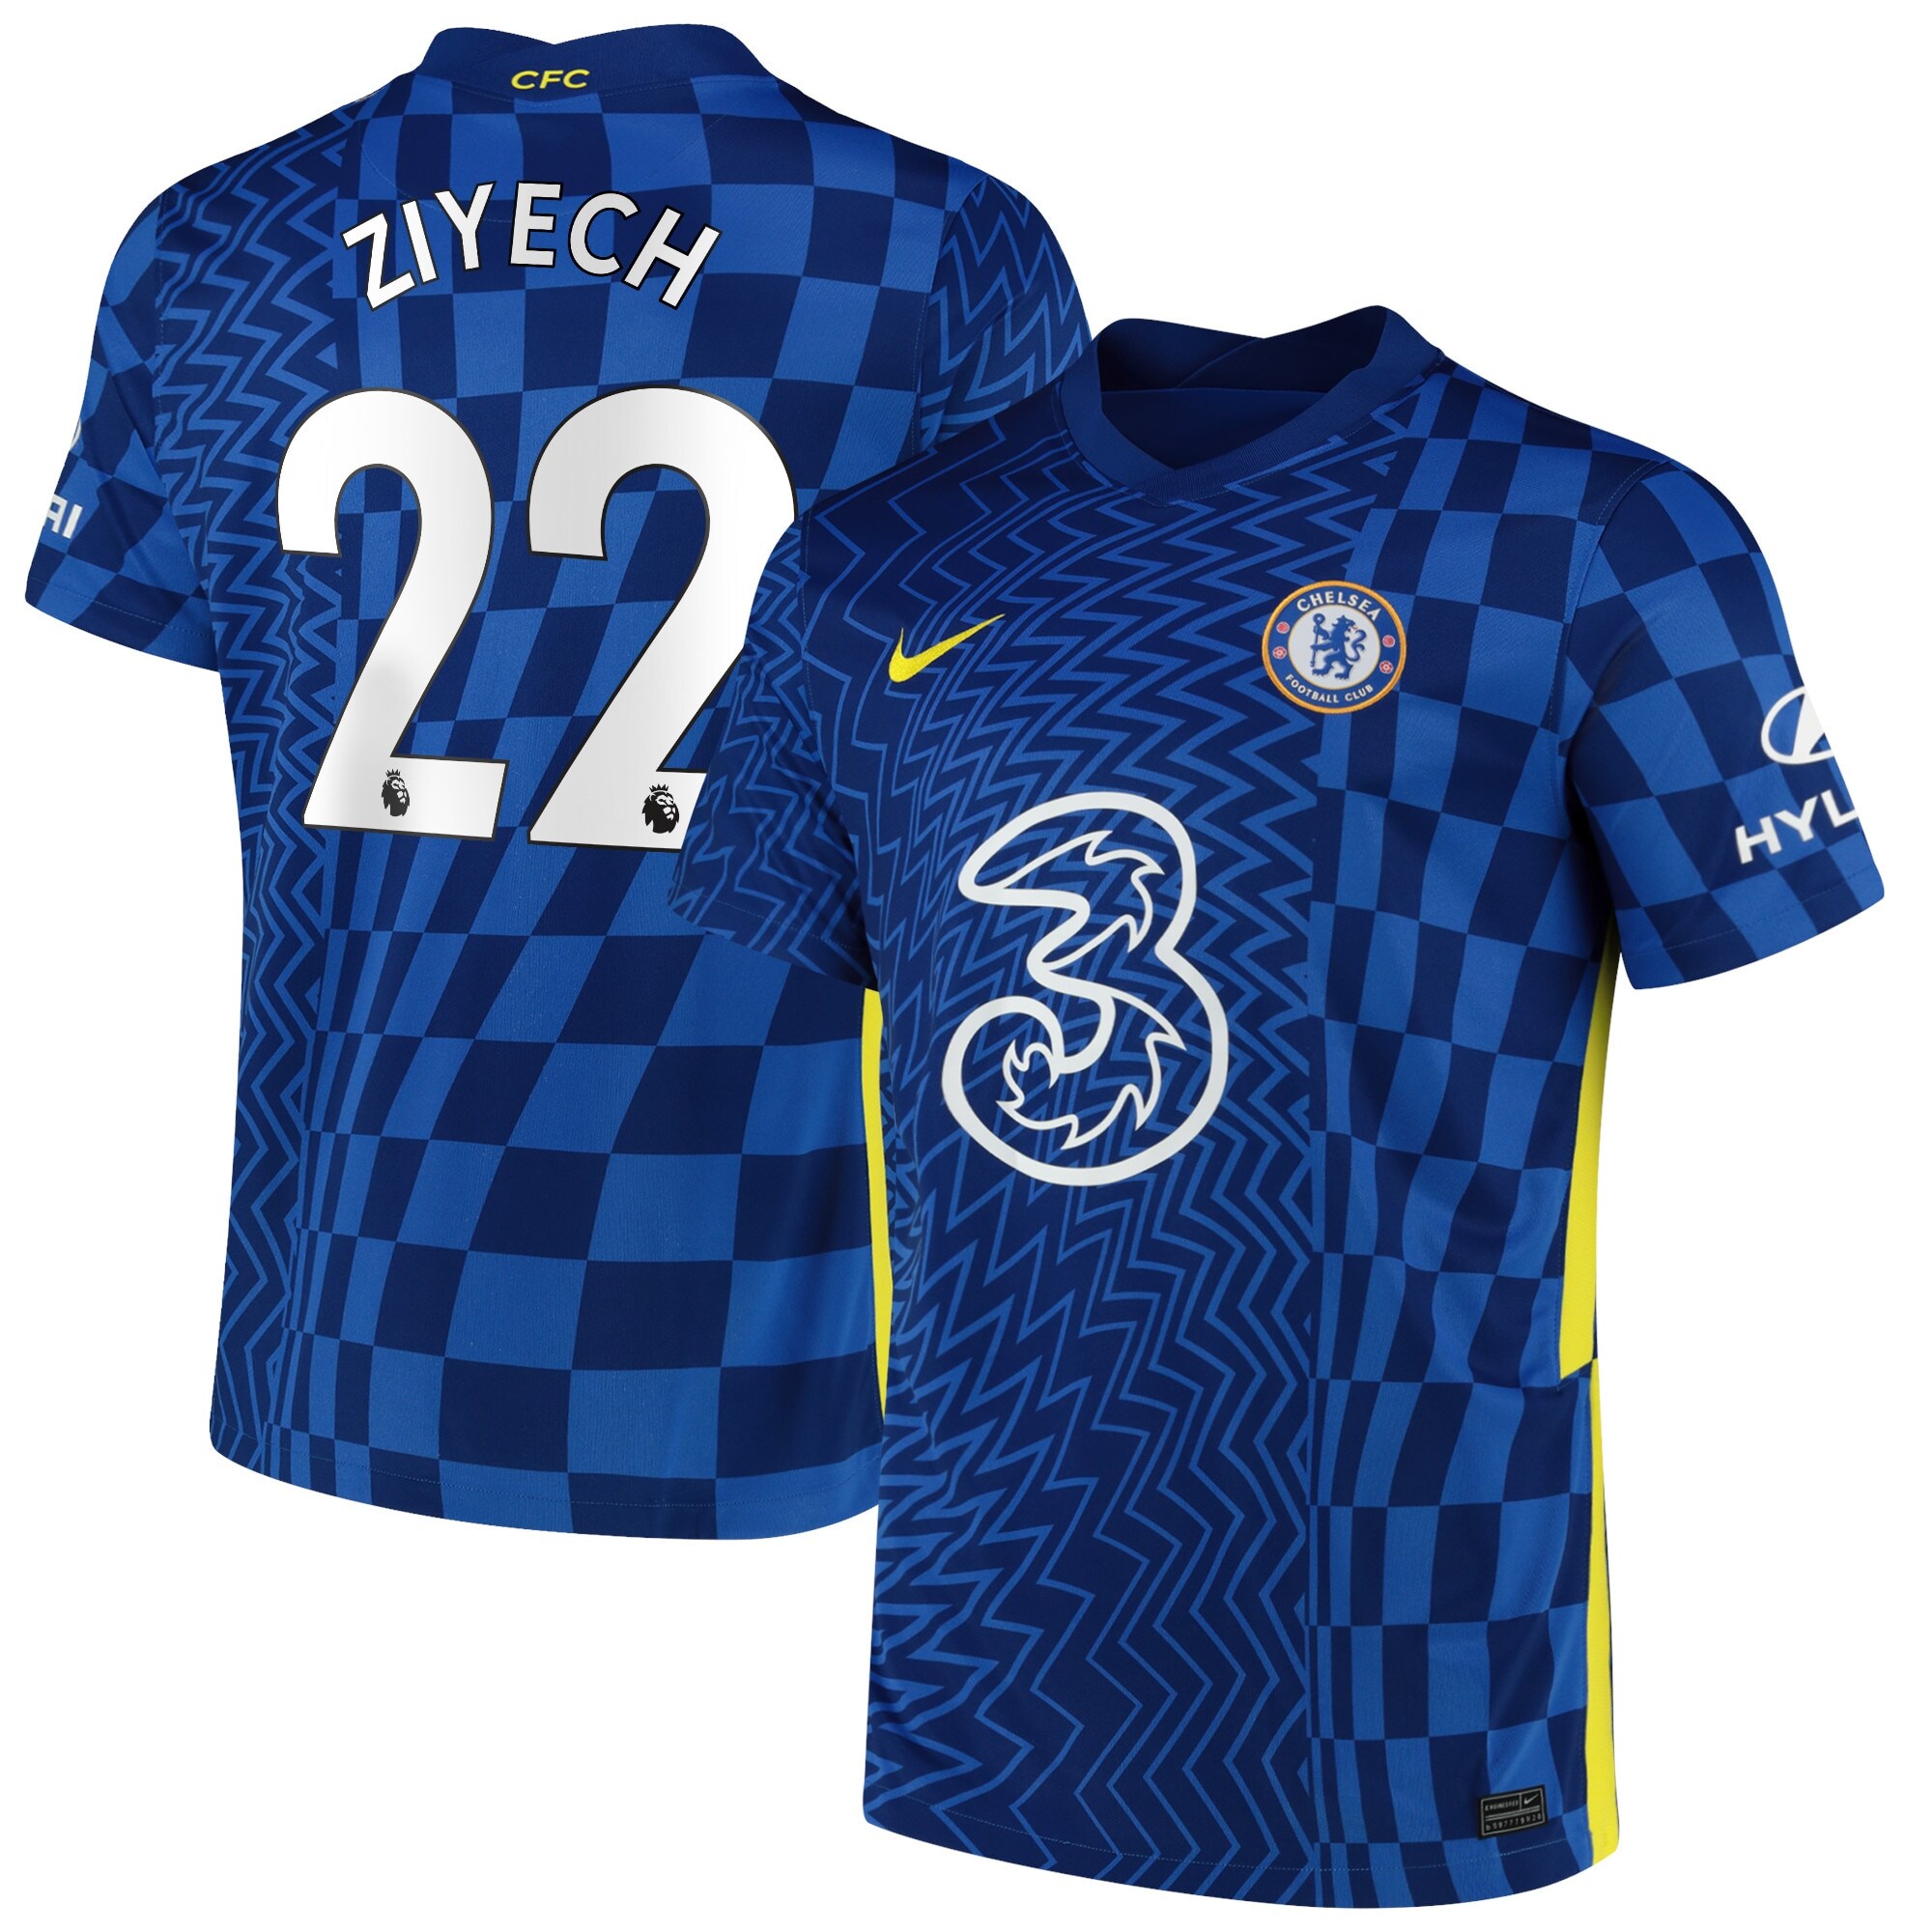 Chelsea Home Stadium Shirt 2021-22 with Ziyech 22 printing